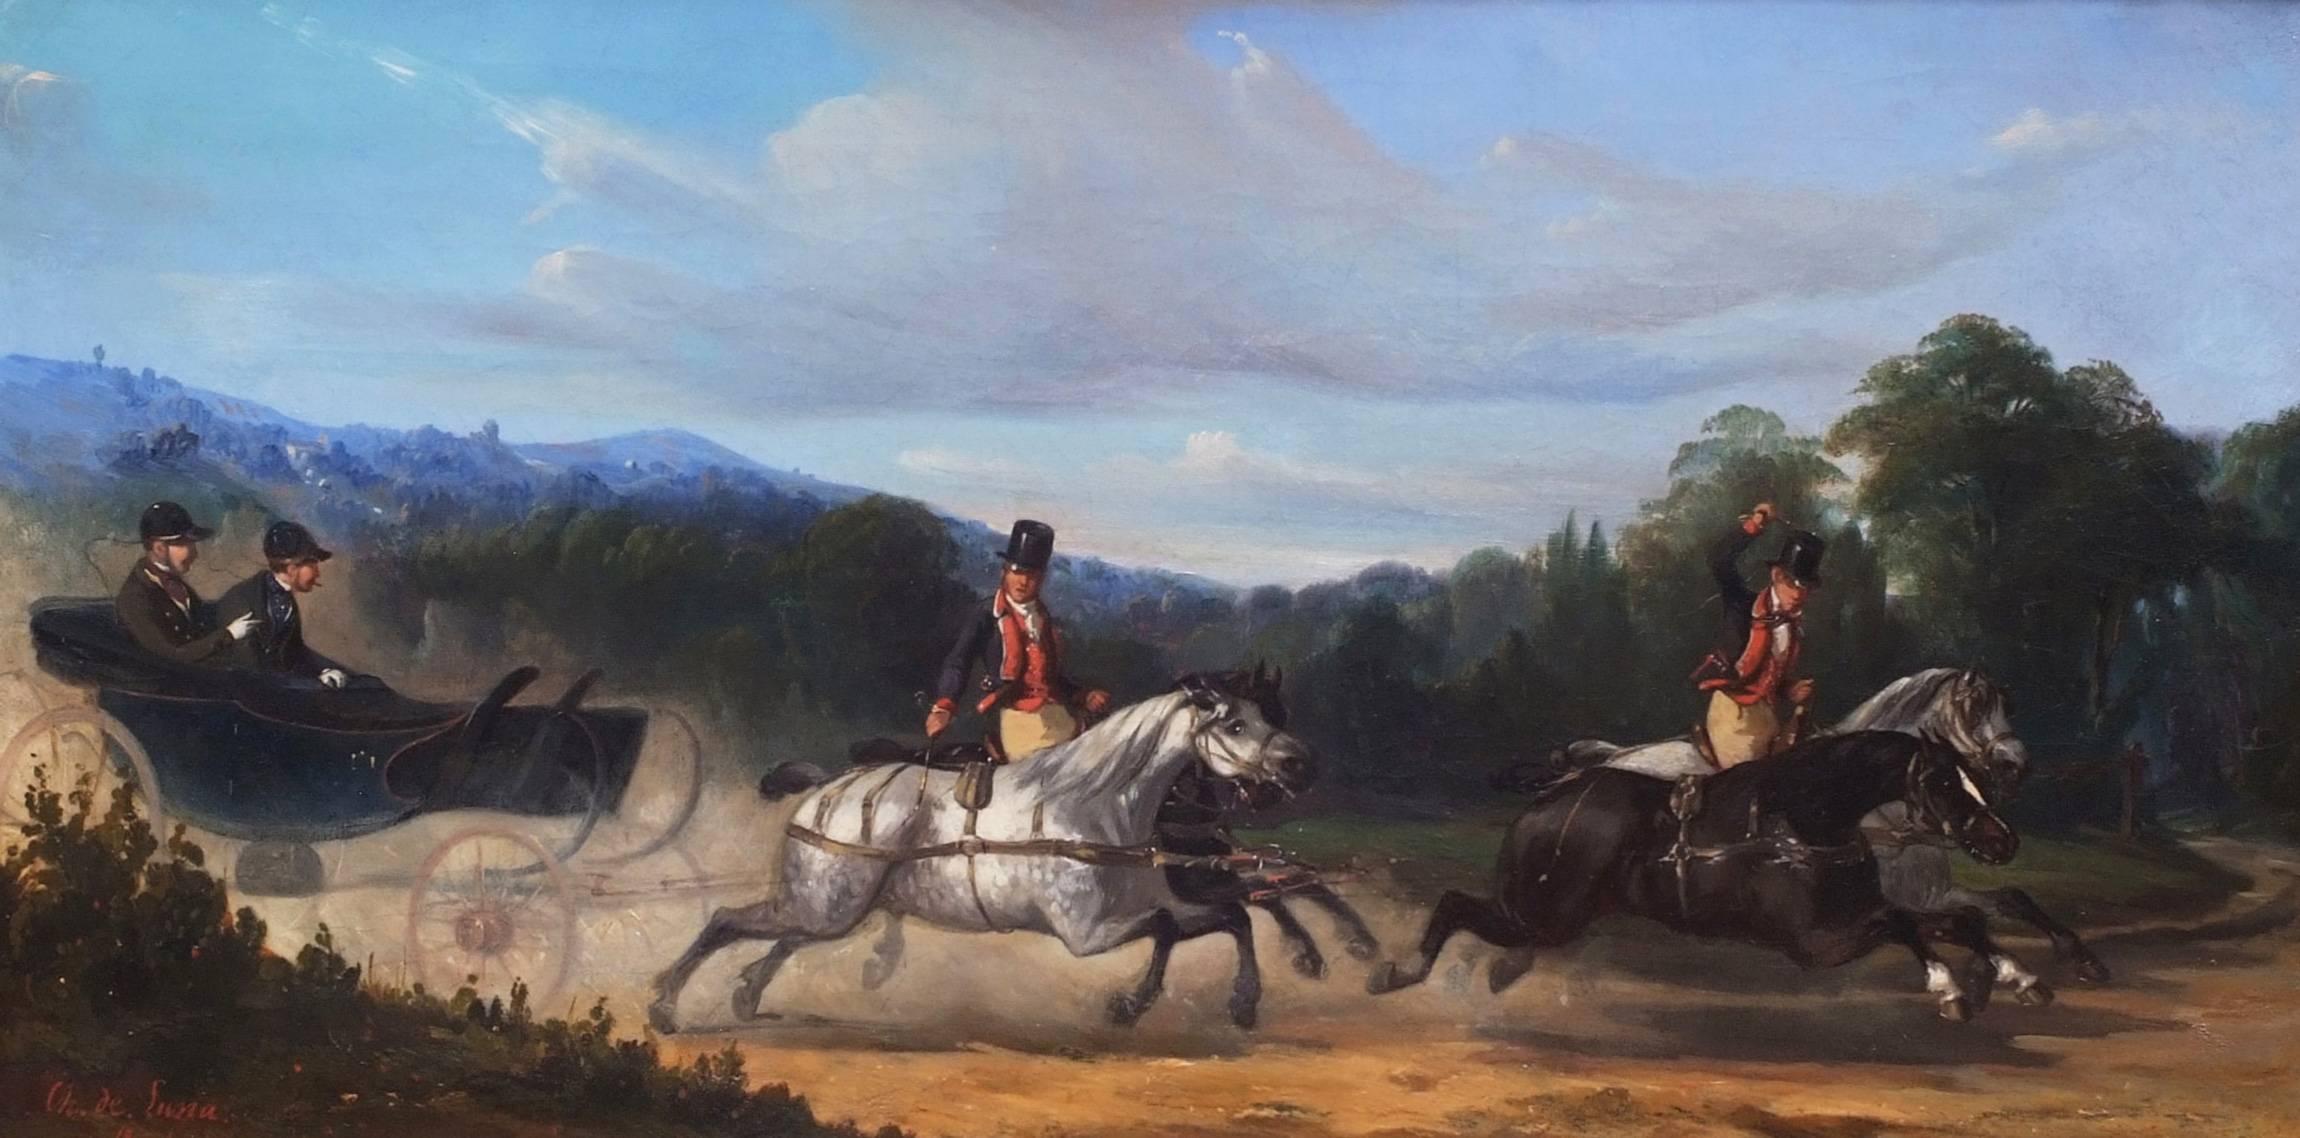 Gemälde des 19. Jahrhunderts – Pferde und Kutschen – Charles de Luna (1812-1866)  (Braun), Landscape Painting, von Charles De Luna